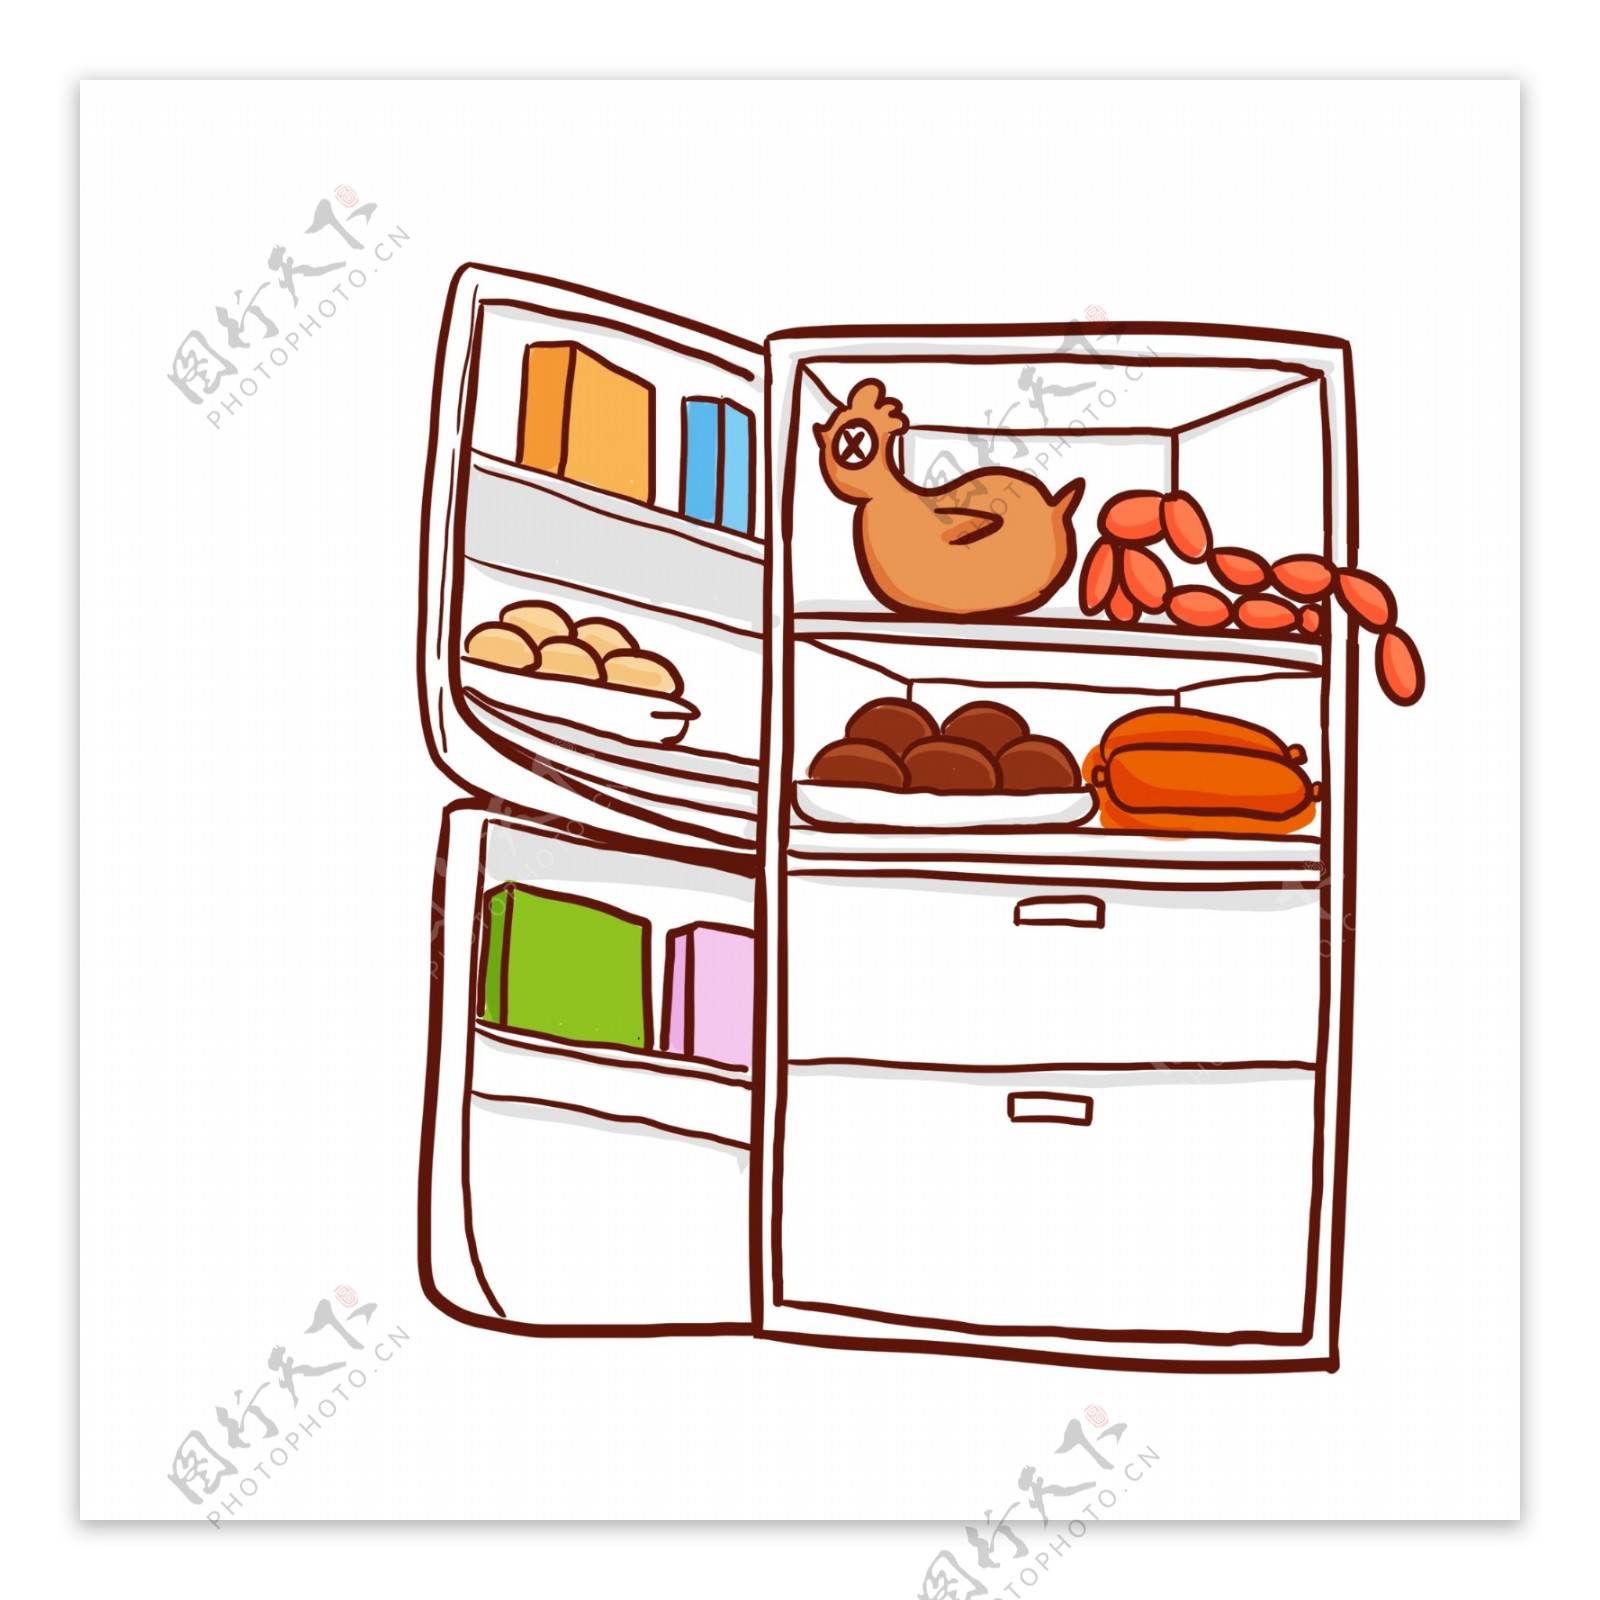 彩绘冰箱里的丰富食材插画设计